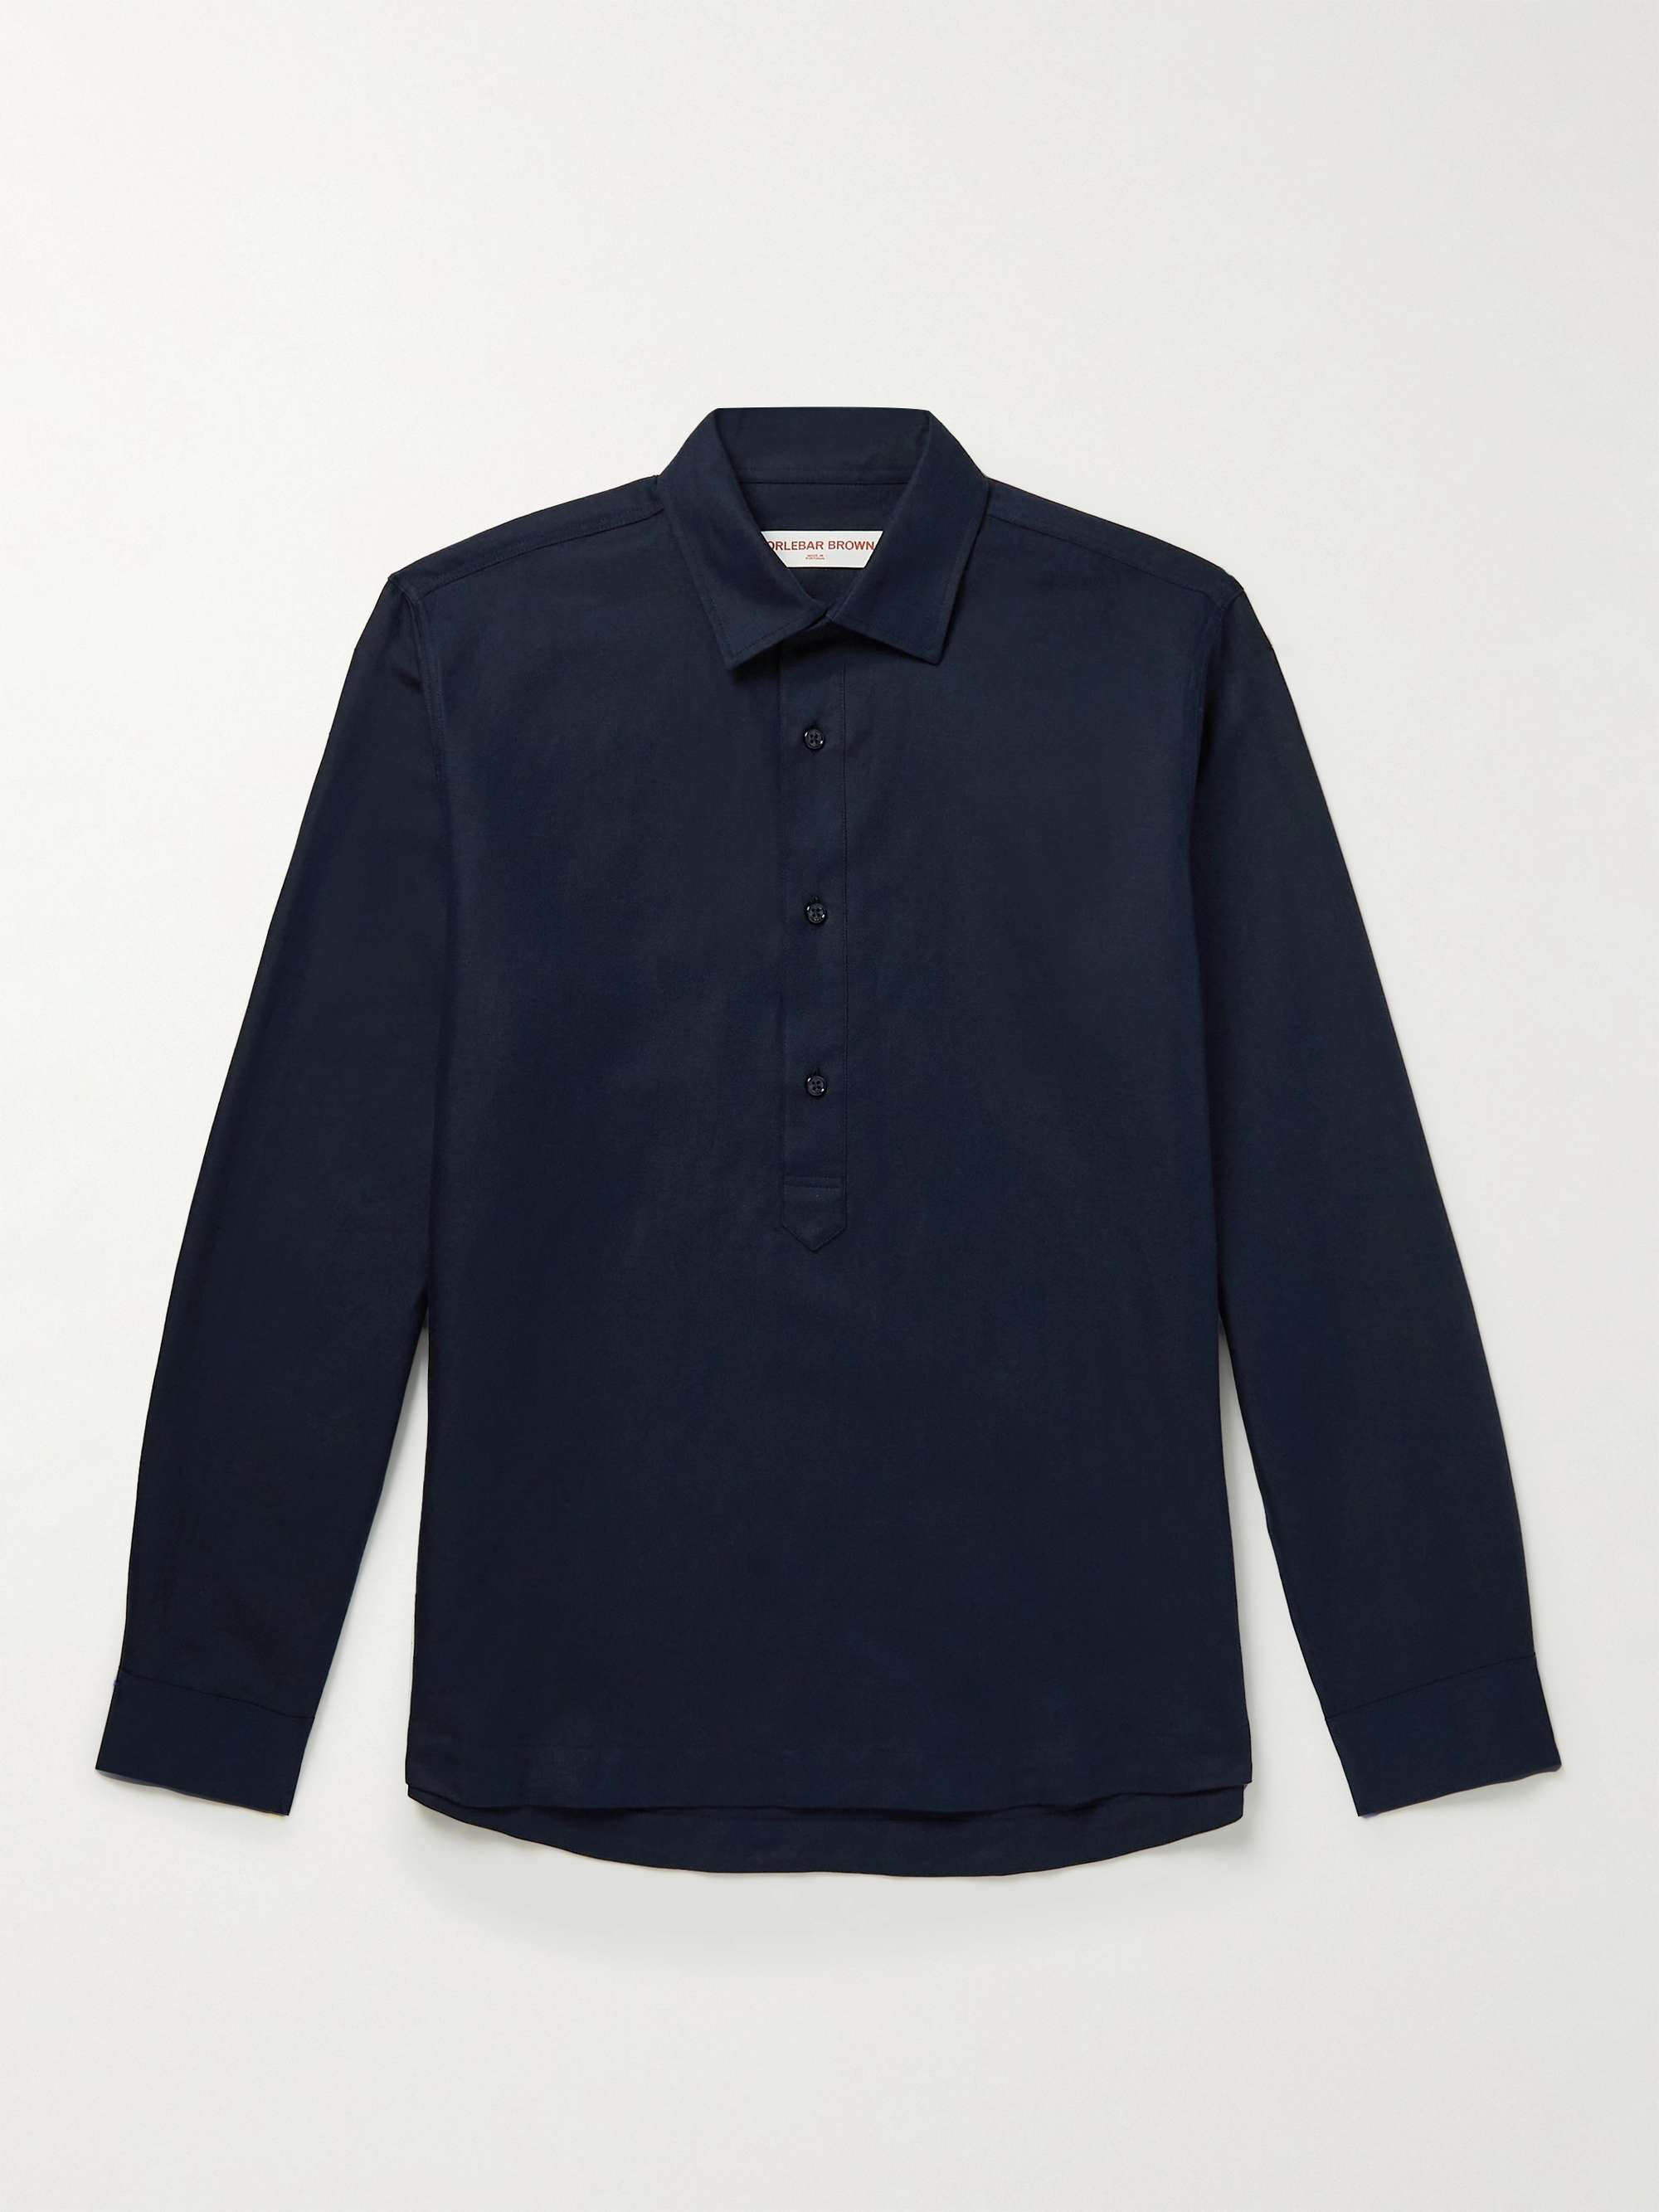 ORLEBAR BROWN Caspian Cotton and Linen-Blend Half-Placket Shirt